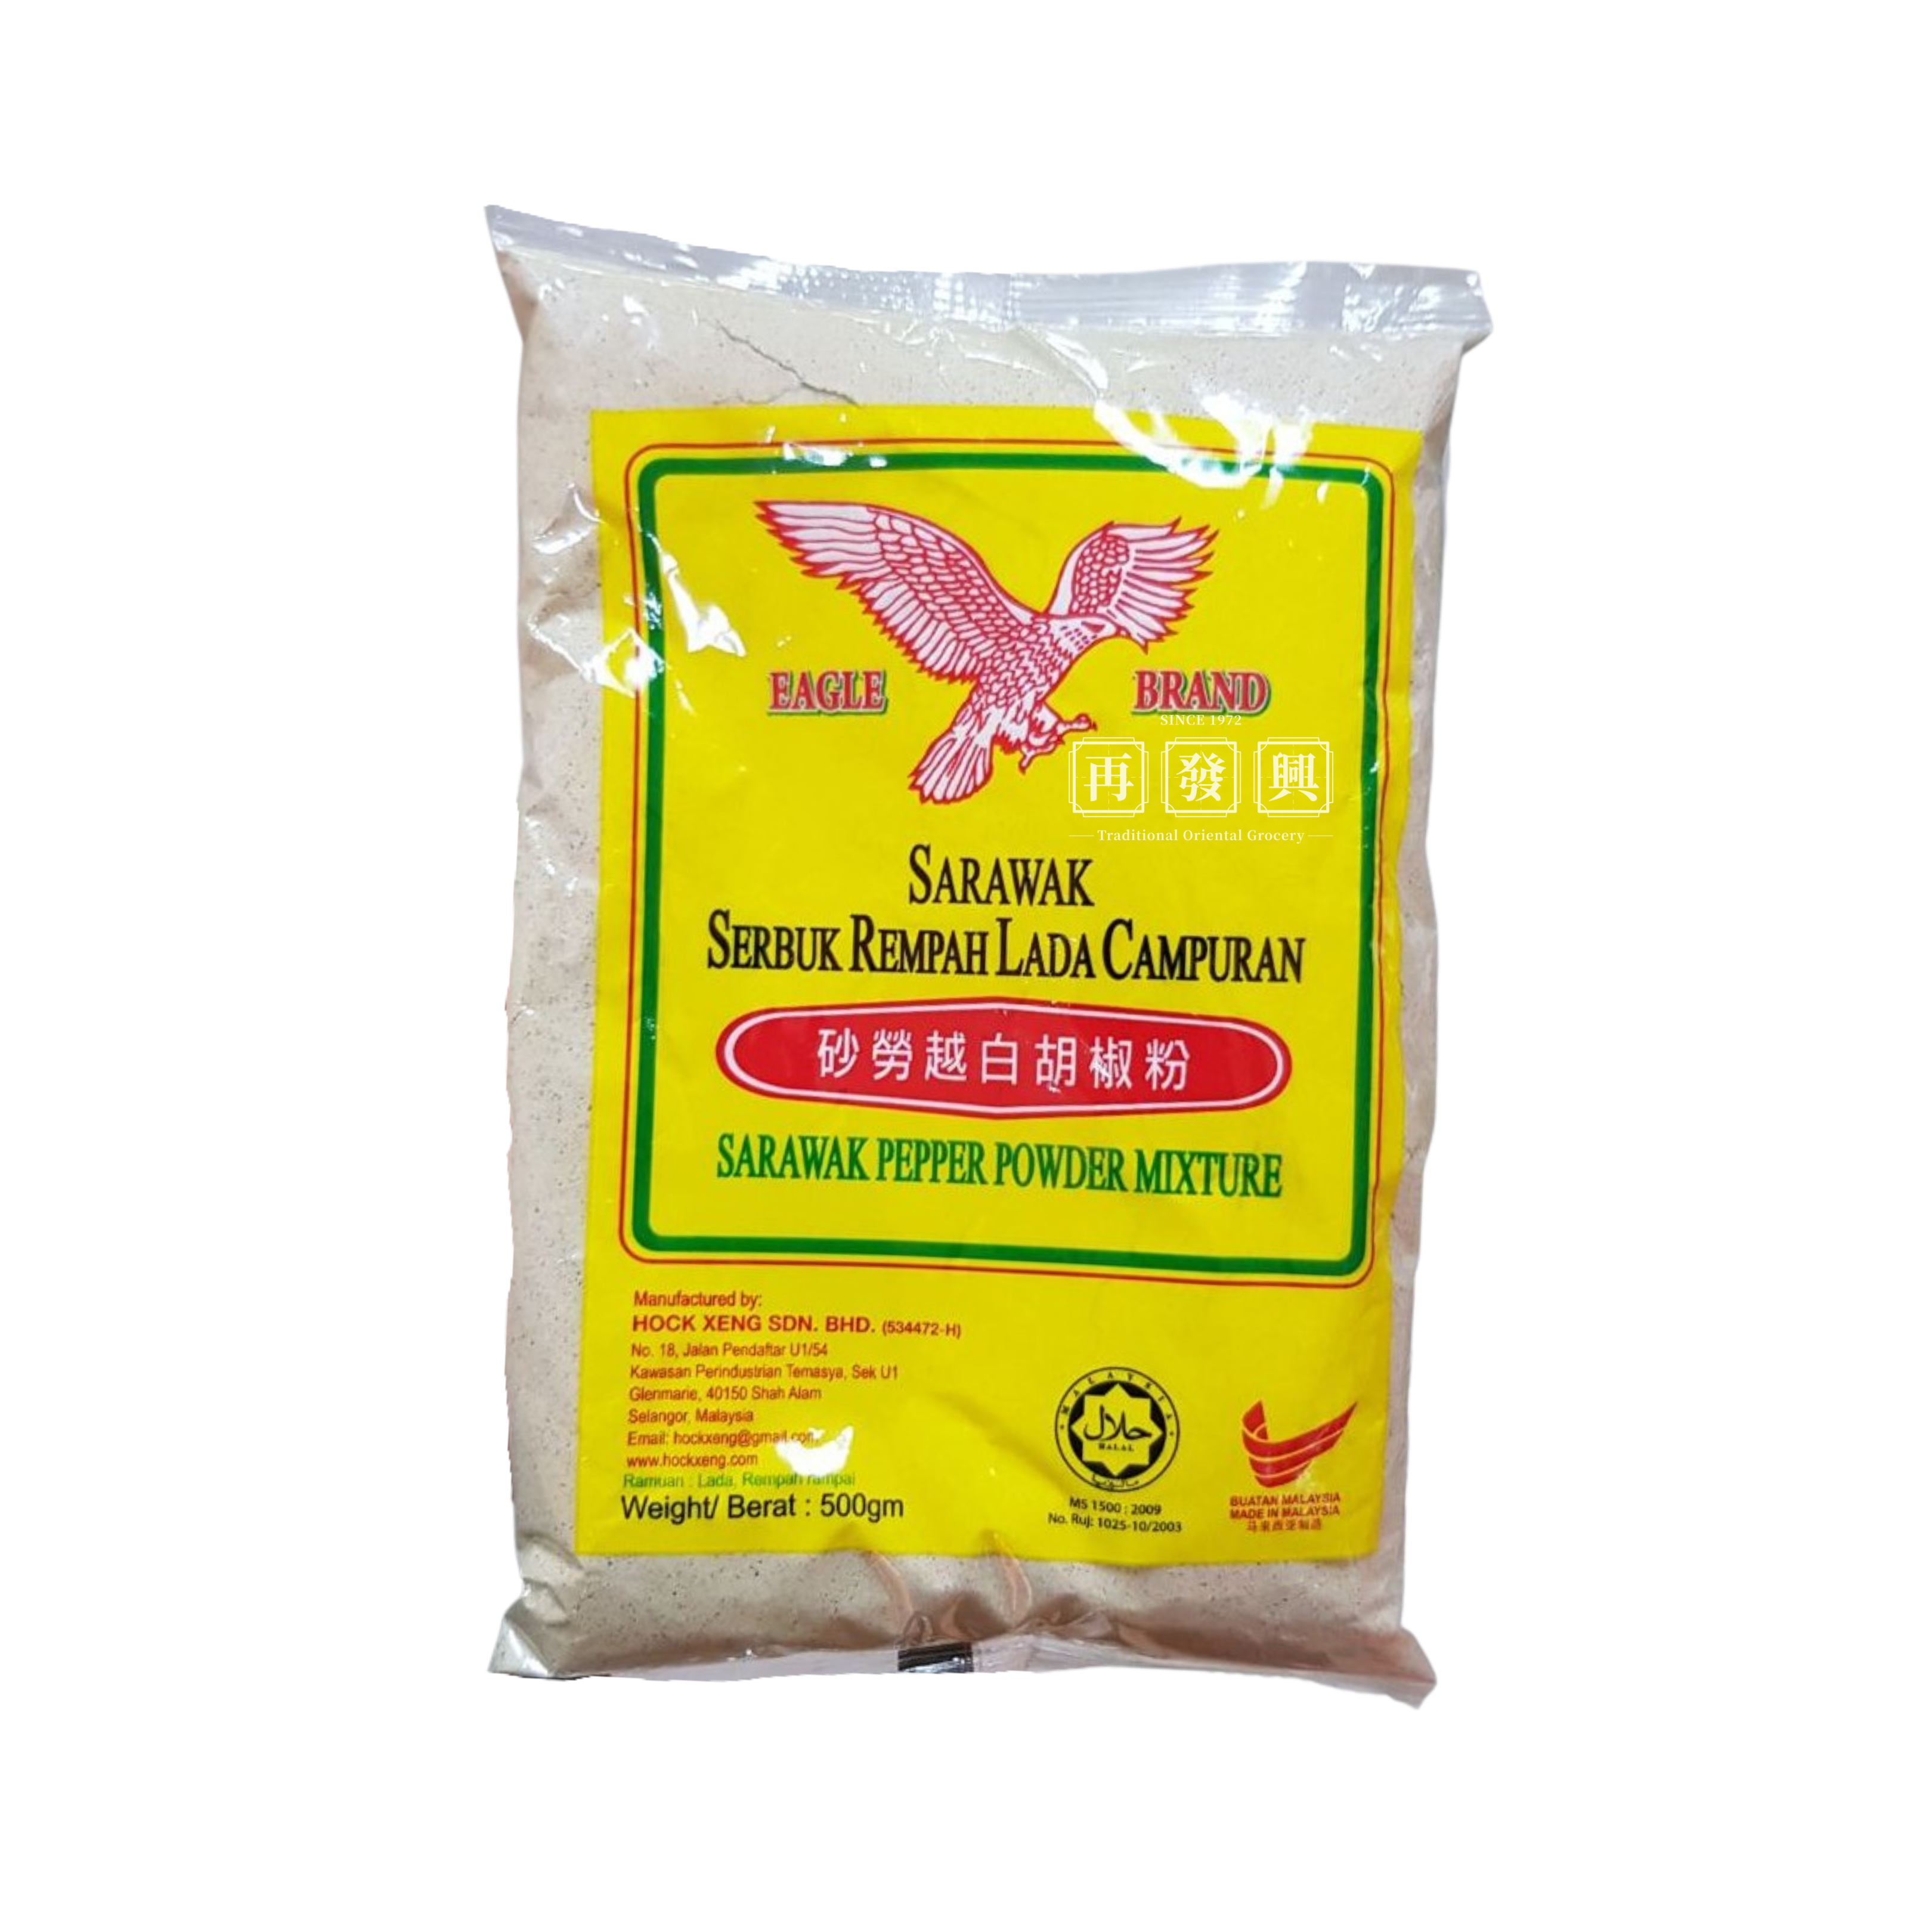 Eagle Brand Sarawak Serbuk Rempah Lada Campuran (Pepper Powder) 500g